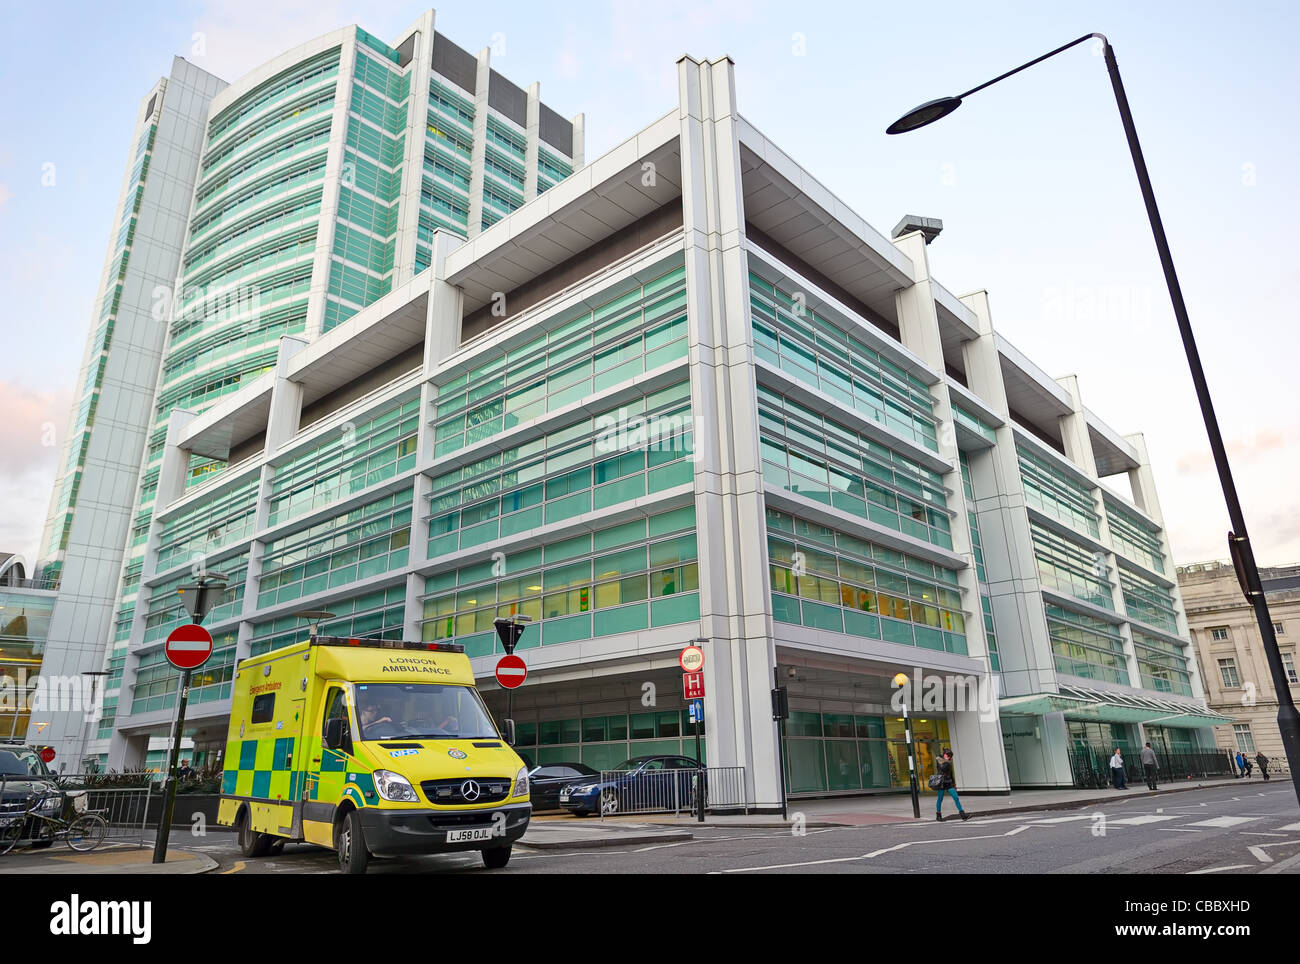 University College Hospital, London, England, UK, Europe. Stock Photo